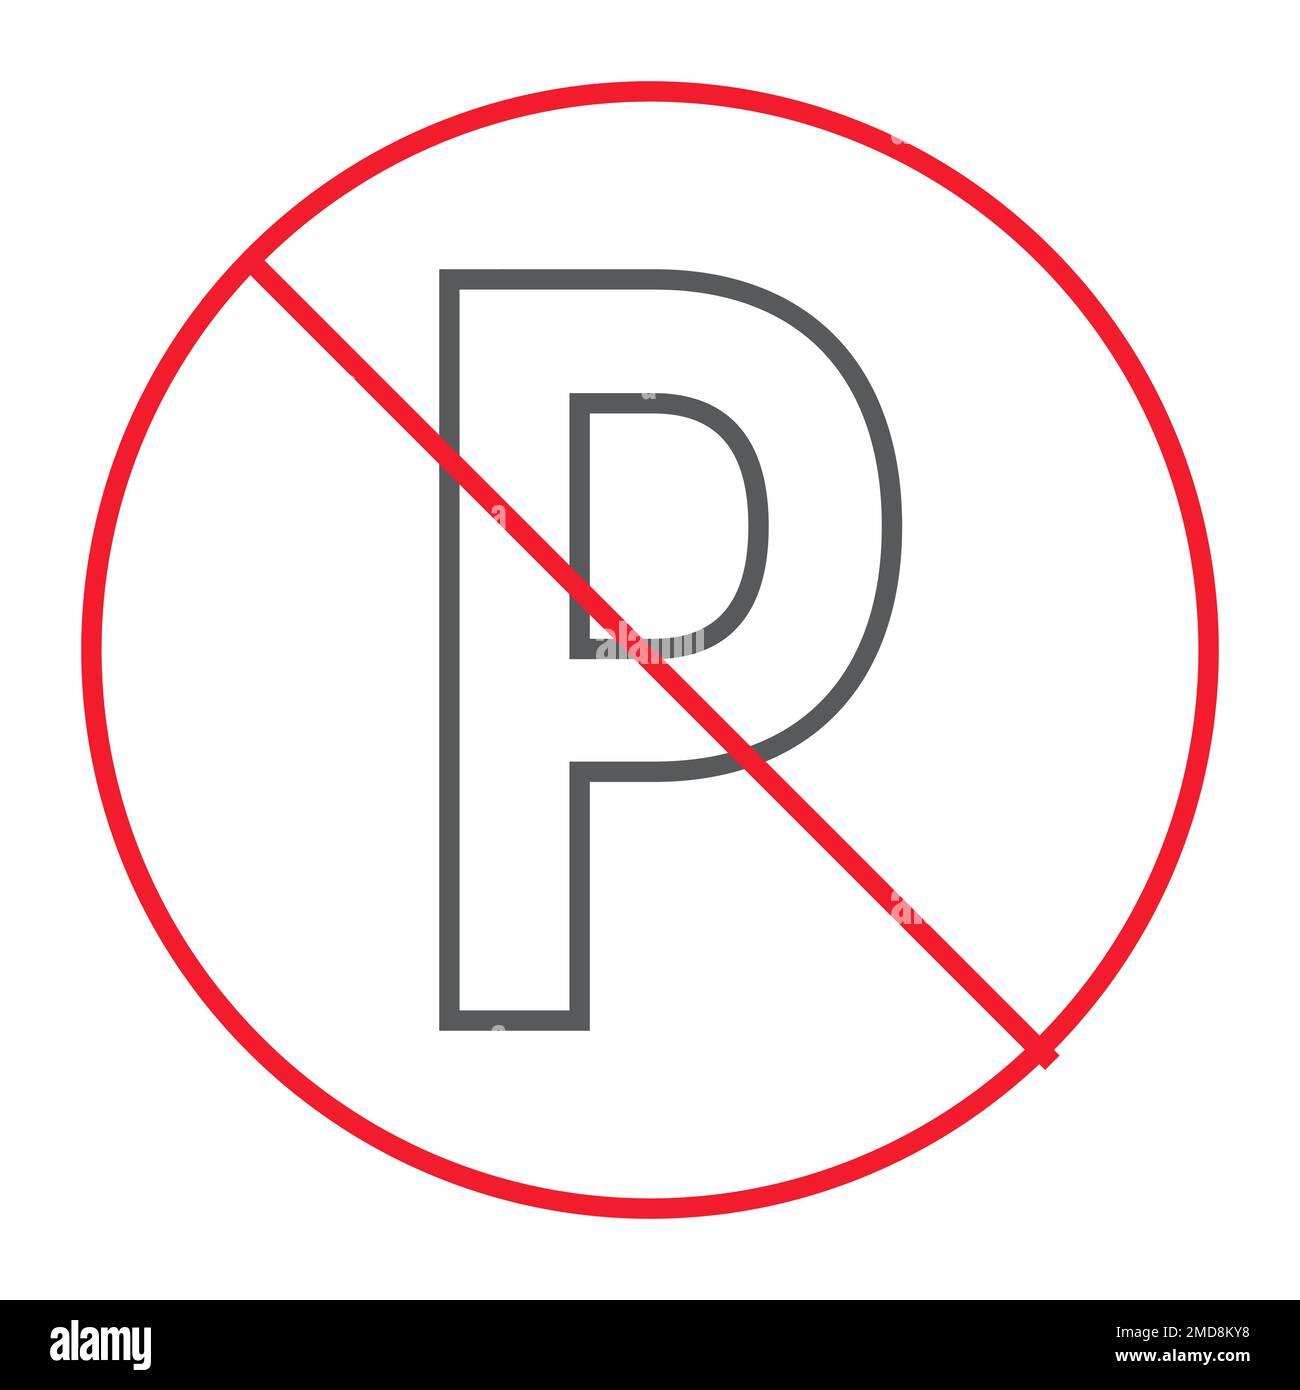 Kein Parken dünne Linie Symbol, Verbot und verboten, keine Vektorgrafiken  für Autozeichen, ein lineares Muster auf weißem Hintergrund, Schritt 10  Stock-Vektorgrafik - Alamy